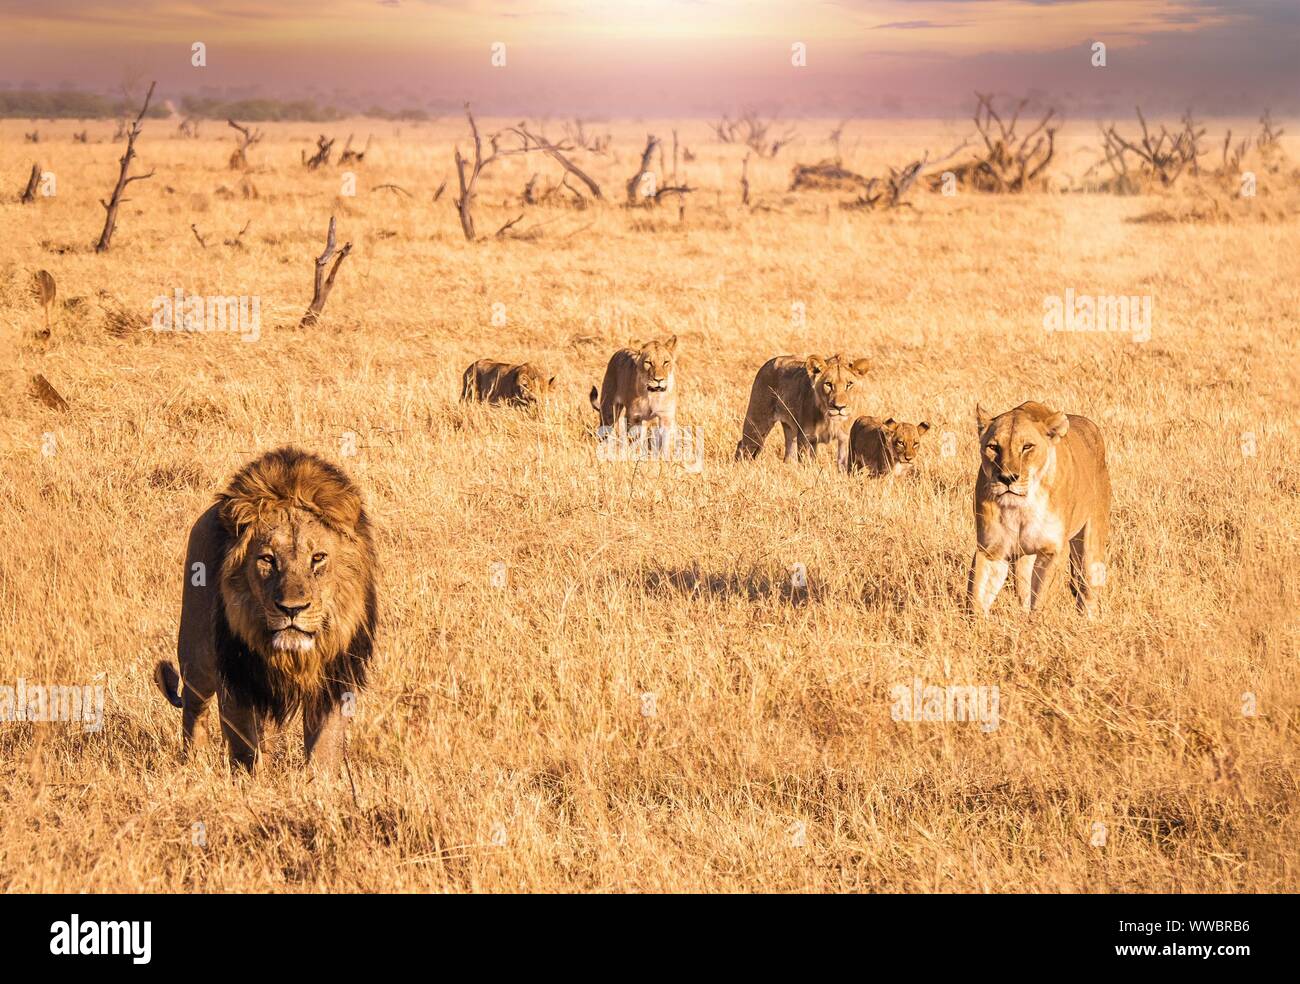 Safari africano escena donde un león macho con una melena completa está mirando la cámara y mover a lo largo de hierba seca con una leona y cuatro cachorros que un Foto de stock